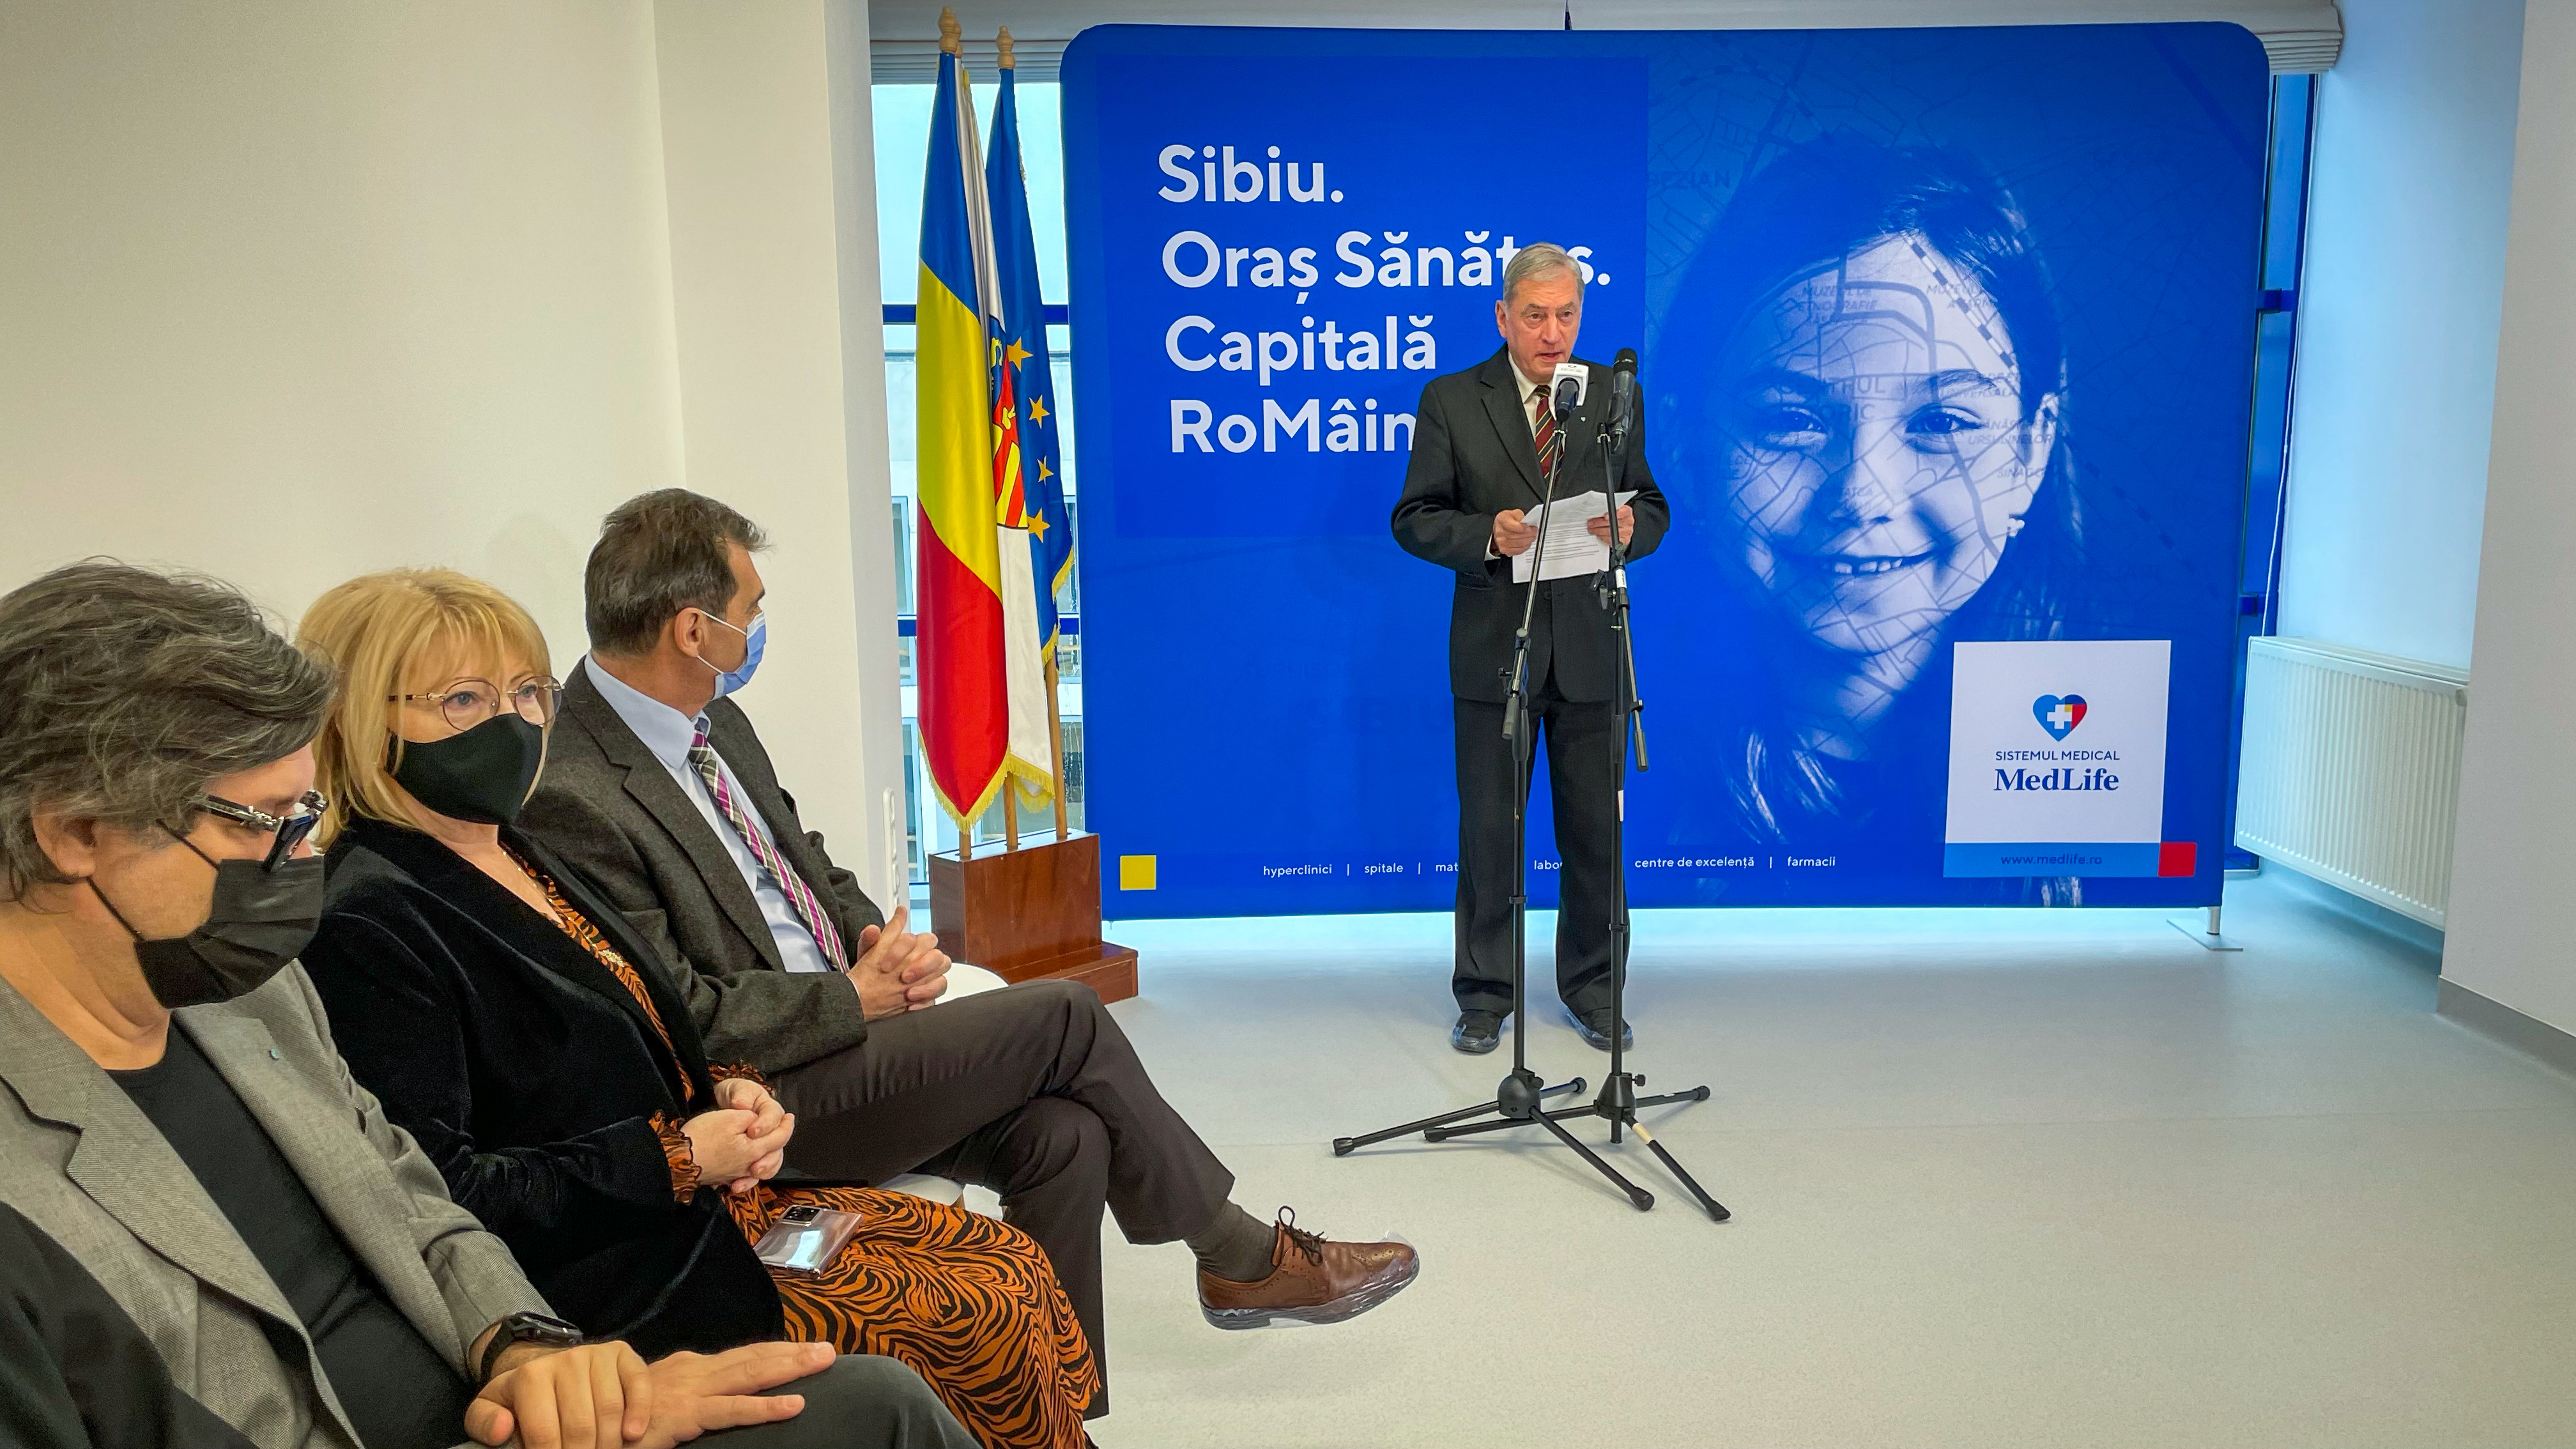 MedLife deschide cea mai mare clinică privată din Sibiu axată pe mamă și copil, cu o investiție de 2,5 milioane euro